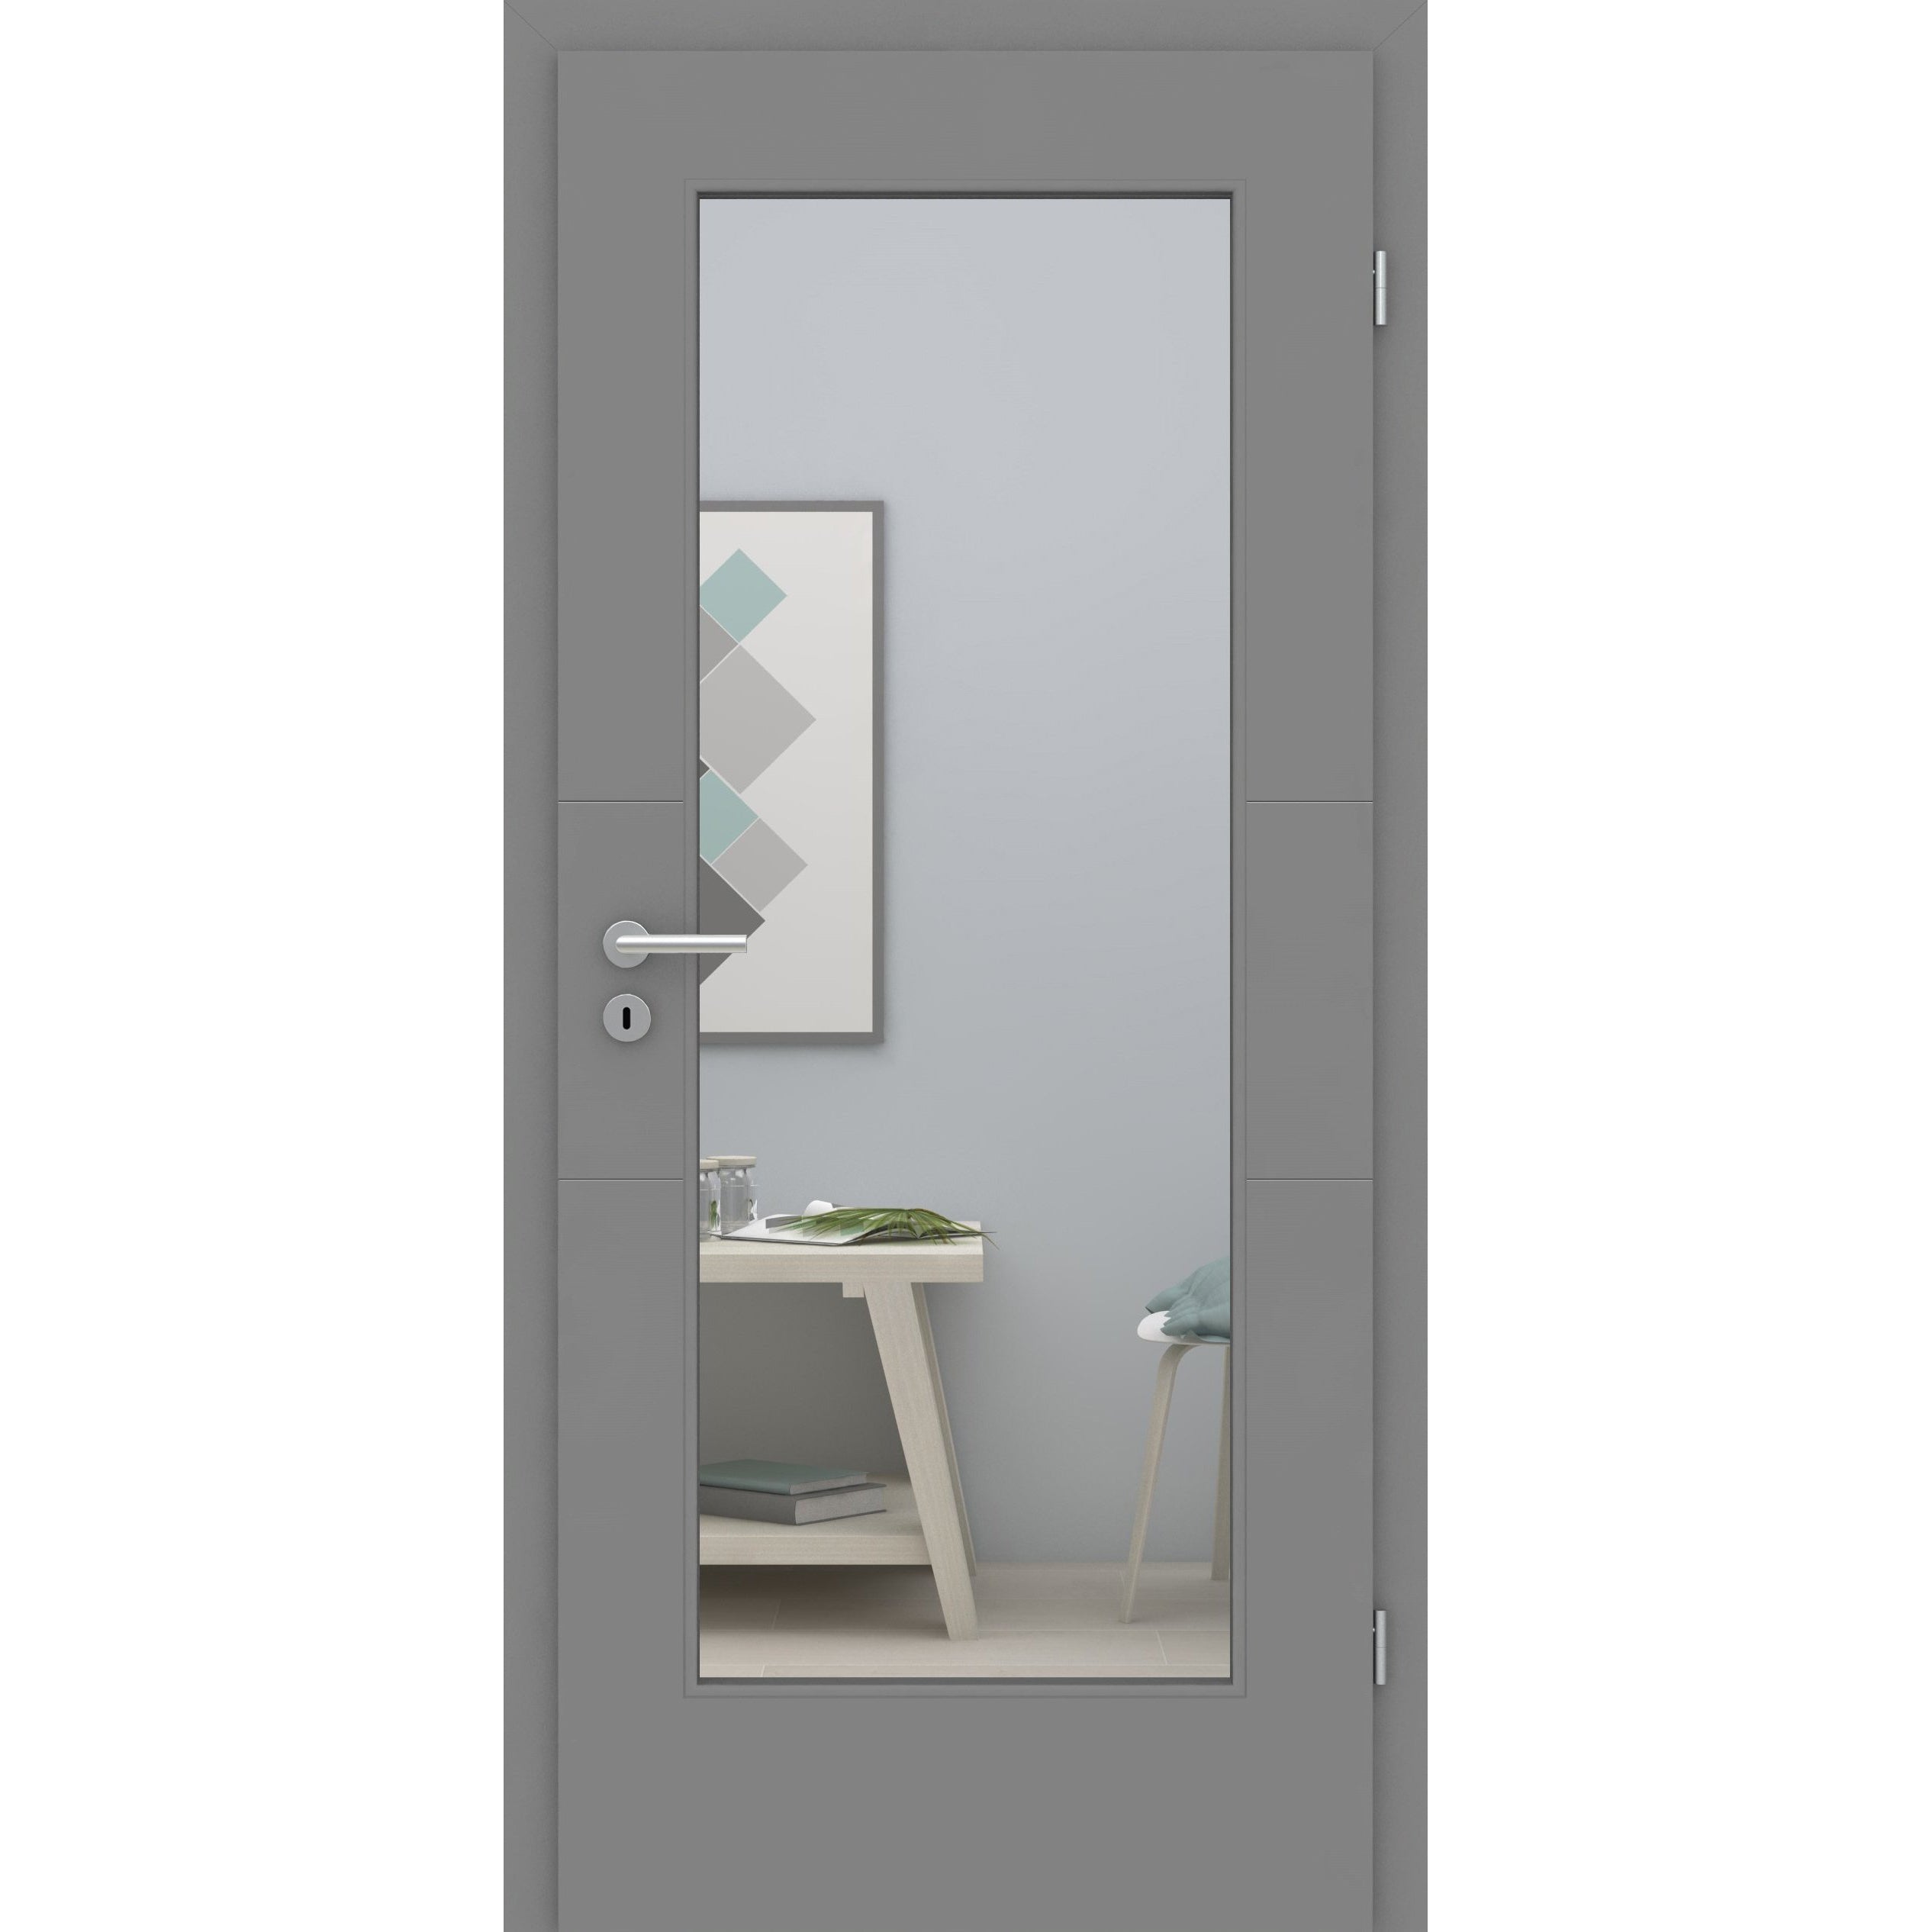 Zimmertür mit Lichtausschnitt grau 2 Rillen quer Designkante - Modell Designtür Q27LA